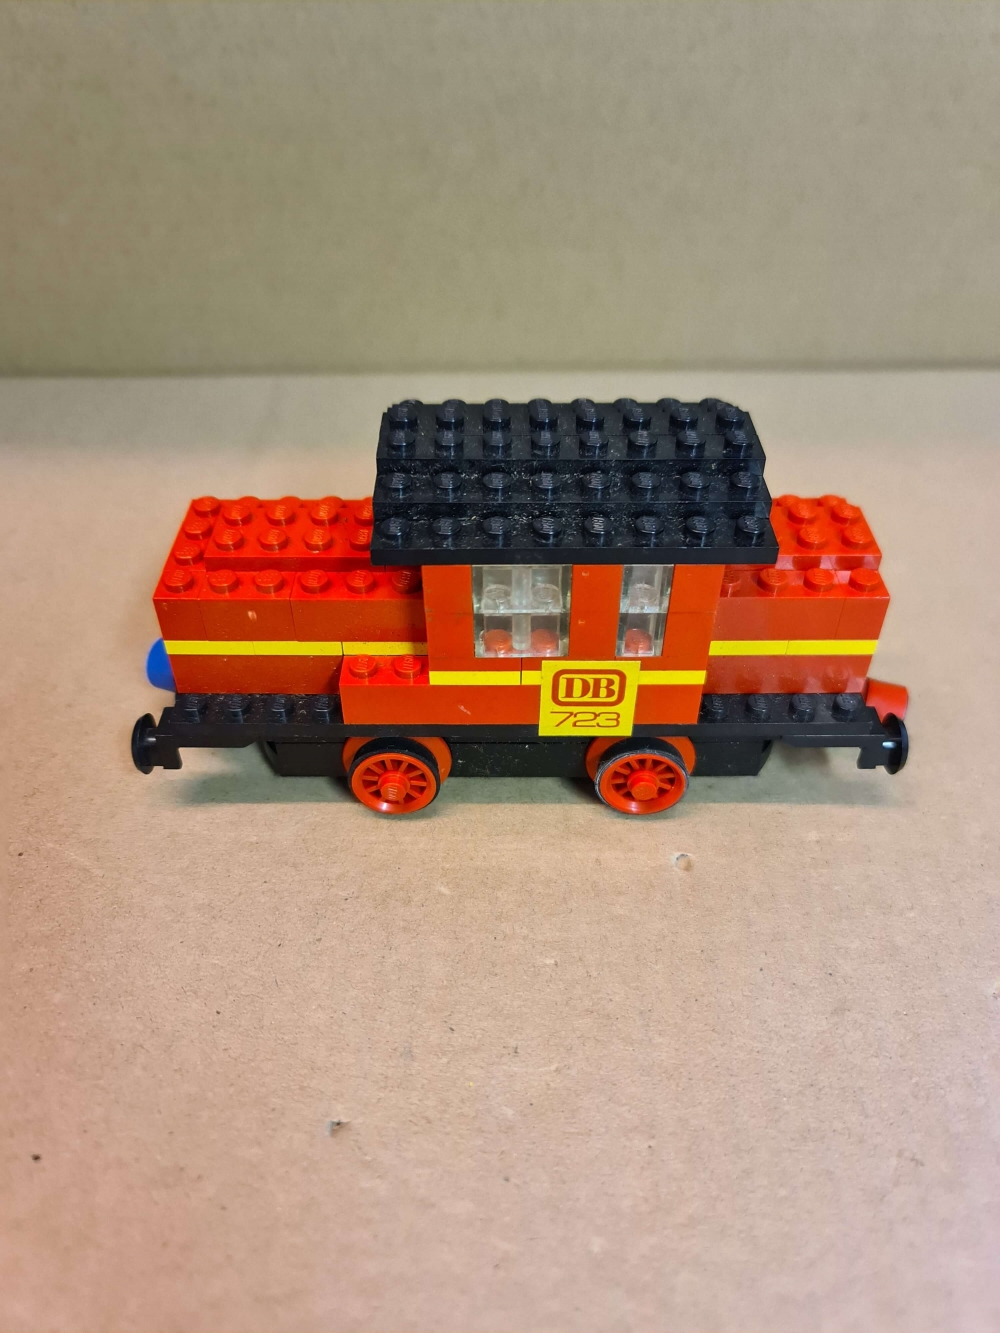 Sett 723 fra Lego Train : 12V serien.
Komplett flott sett foruten skrutrekker og ledning. Selve toget er komplett, uten manual.
Motor testet og fungerer godt. Gode gummiringer på hjulene.